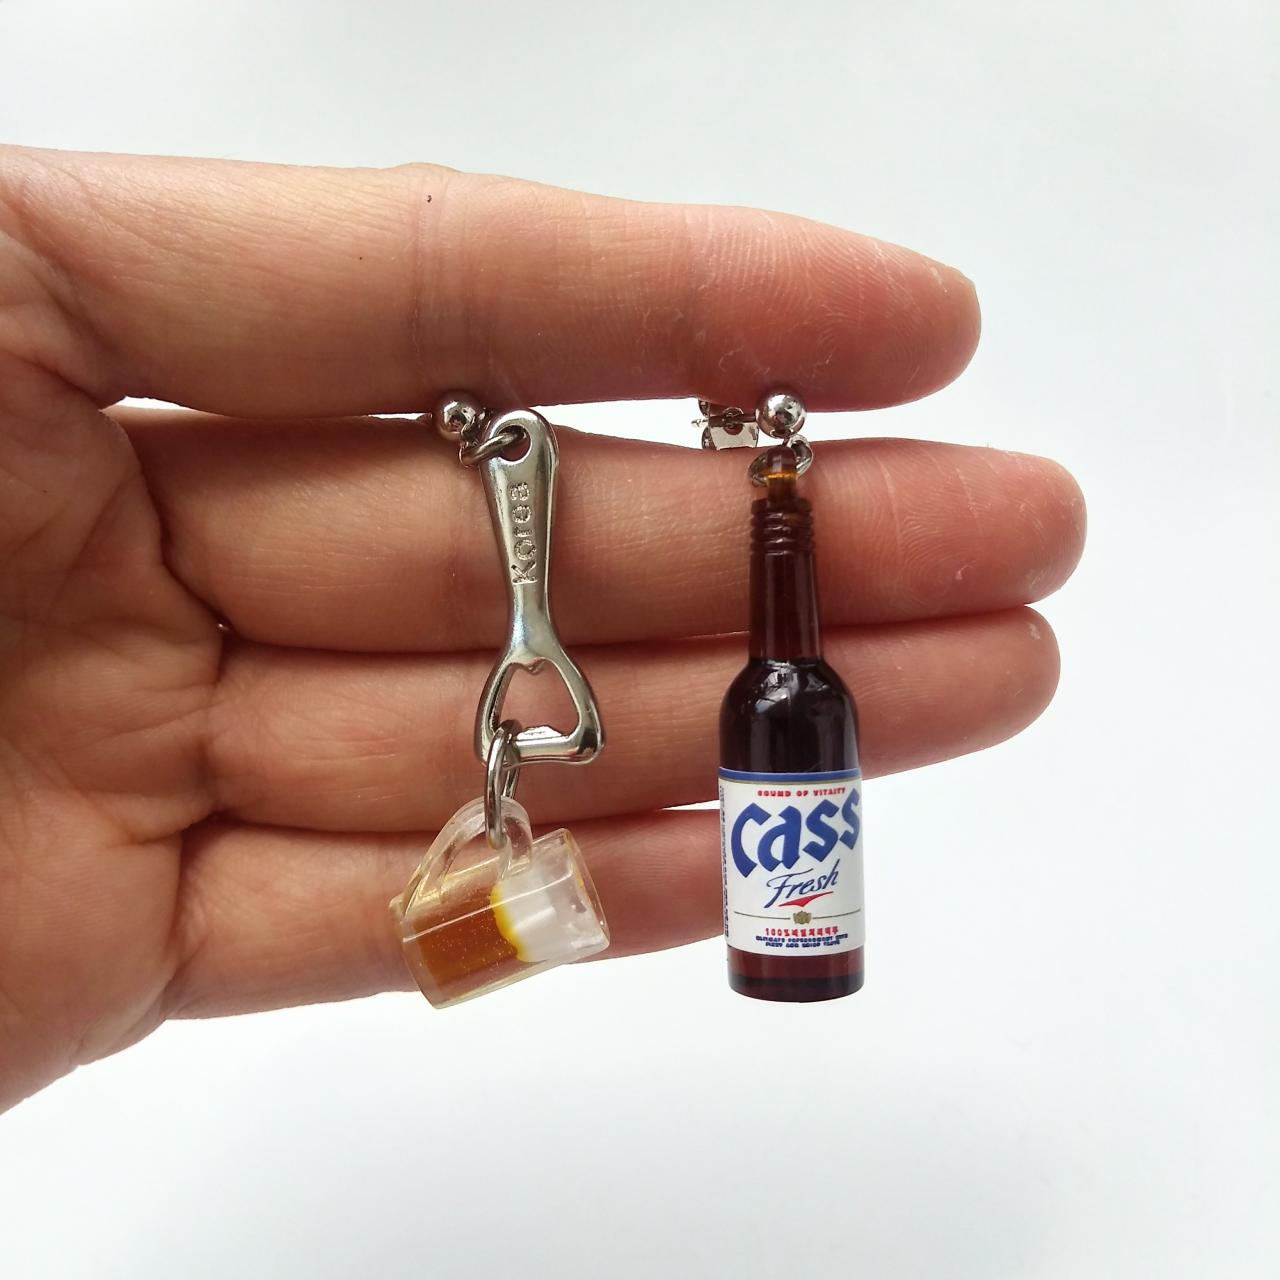 Korean Cass Beer Bottle Earrings With Bottle Opener And Mug Of Beer Earrings, Drink Bottle Earrings